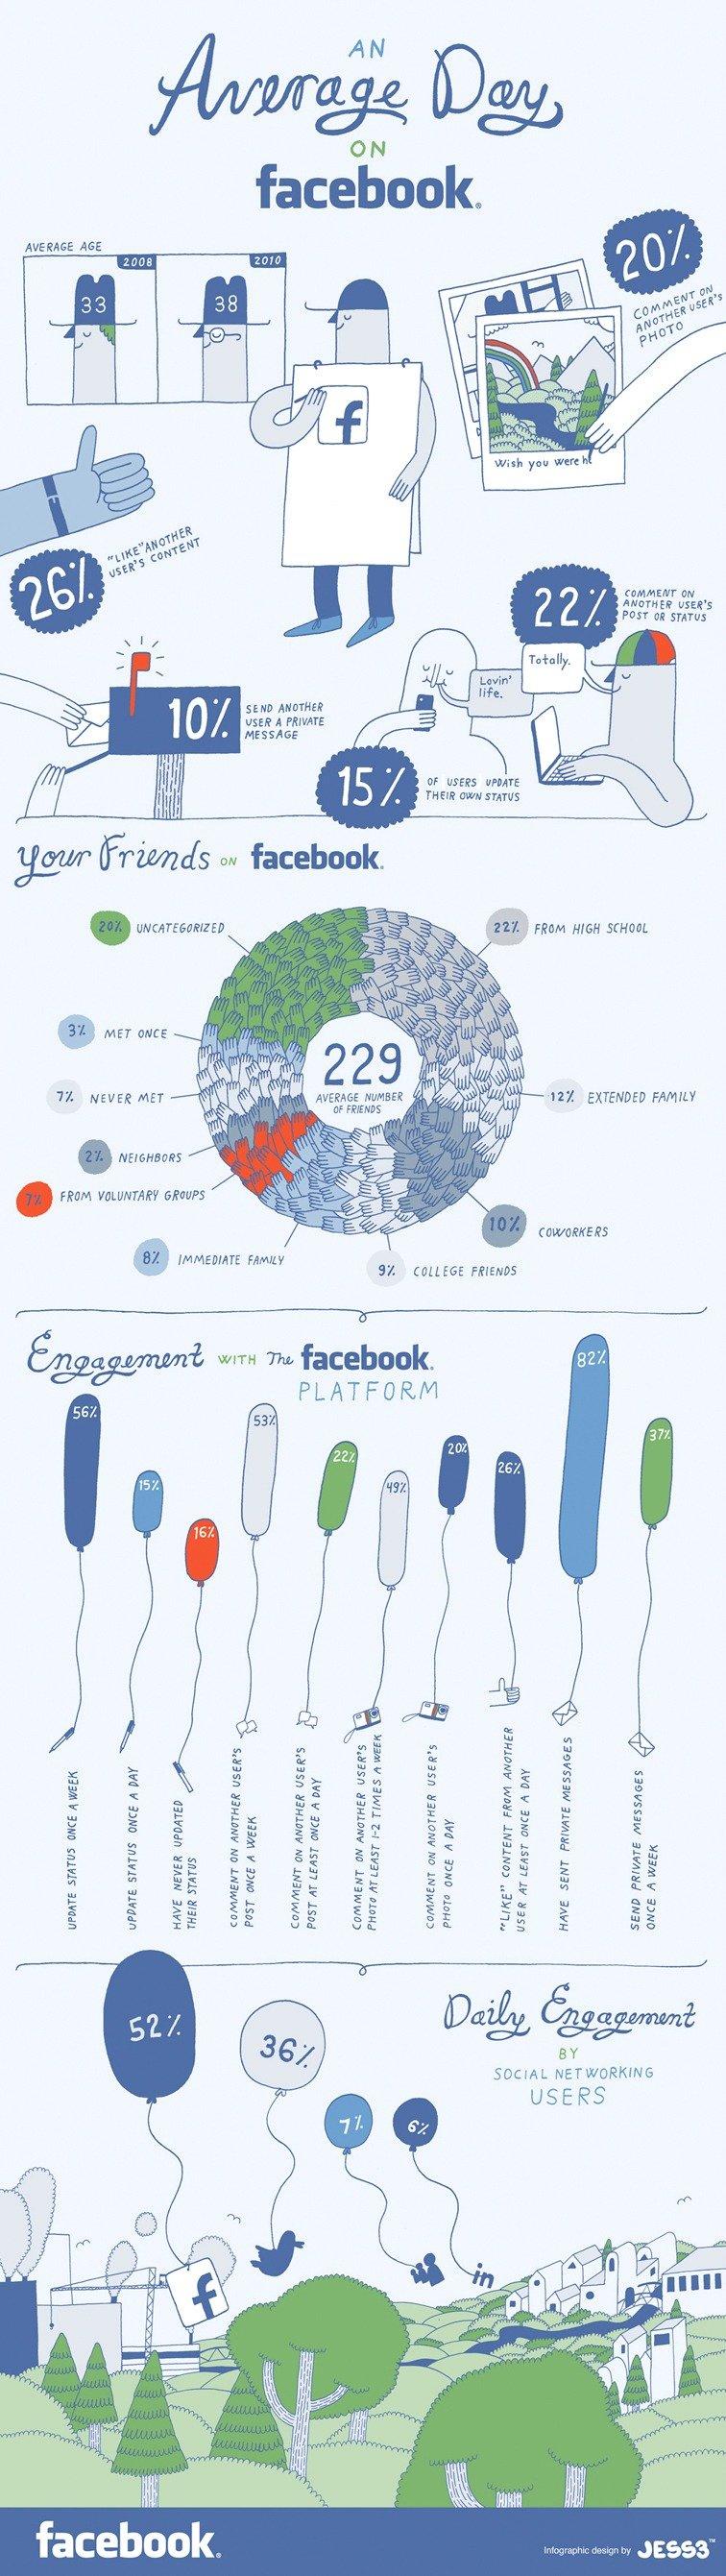 Com'è l'utente medio di Facebook? [INFOGRAFICA]